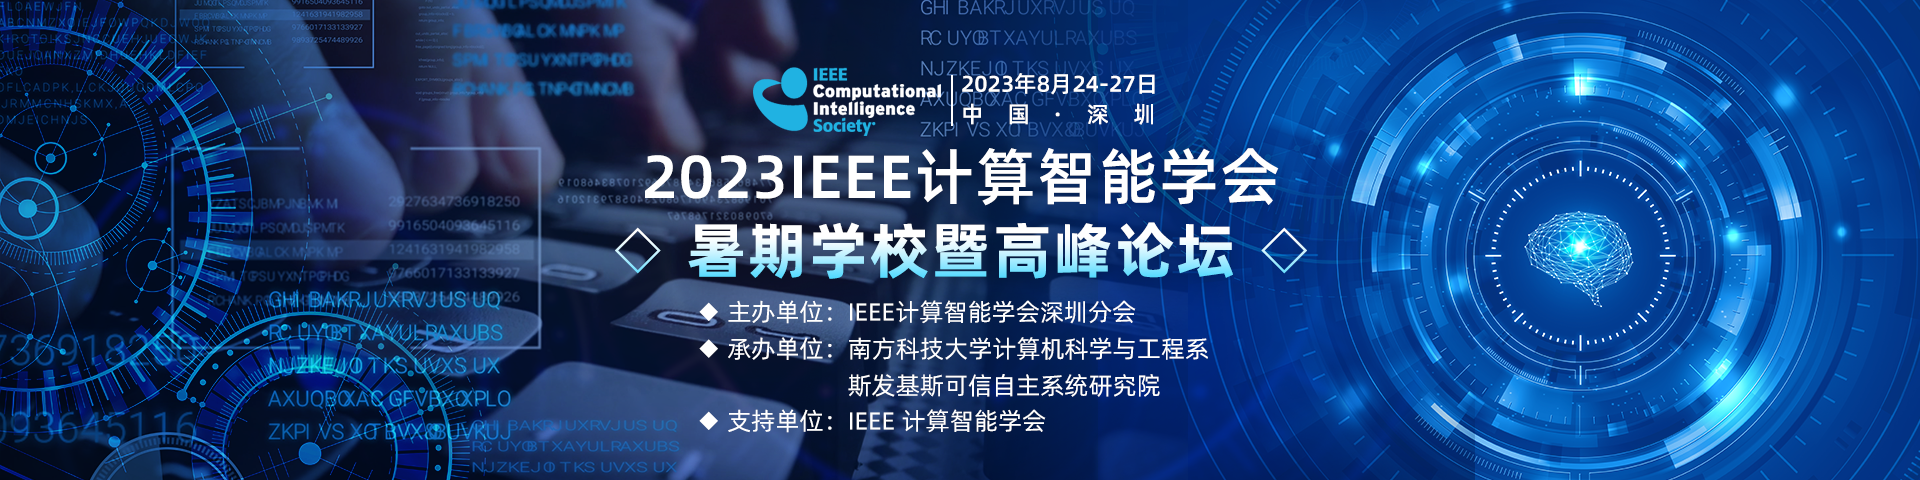 2023 IEEE计算智能学会-艾思banner-陈嘉妍-20230601.png